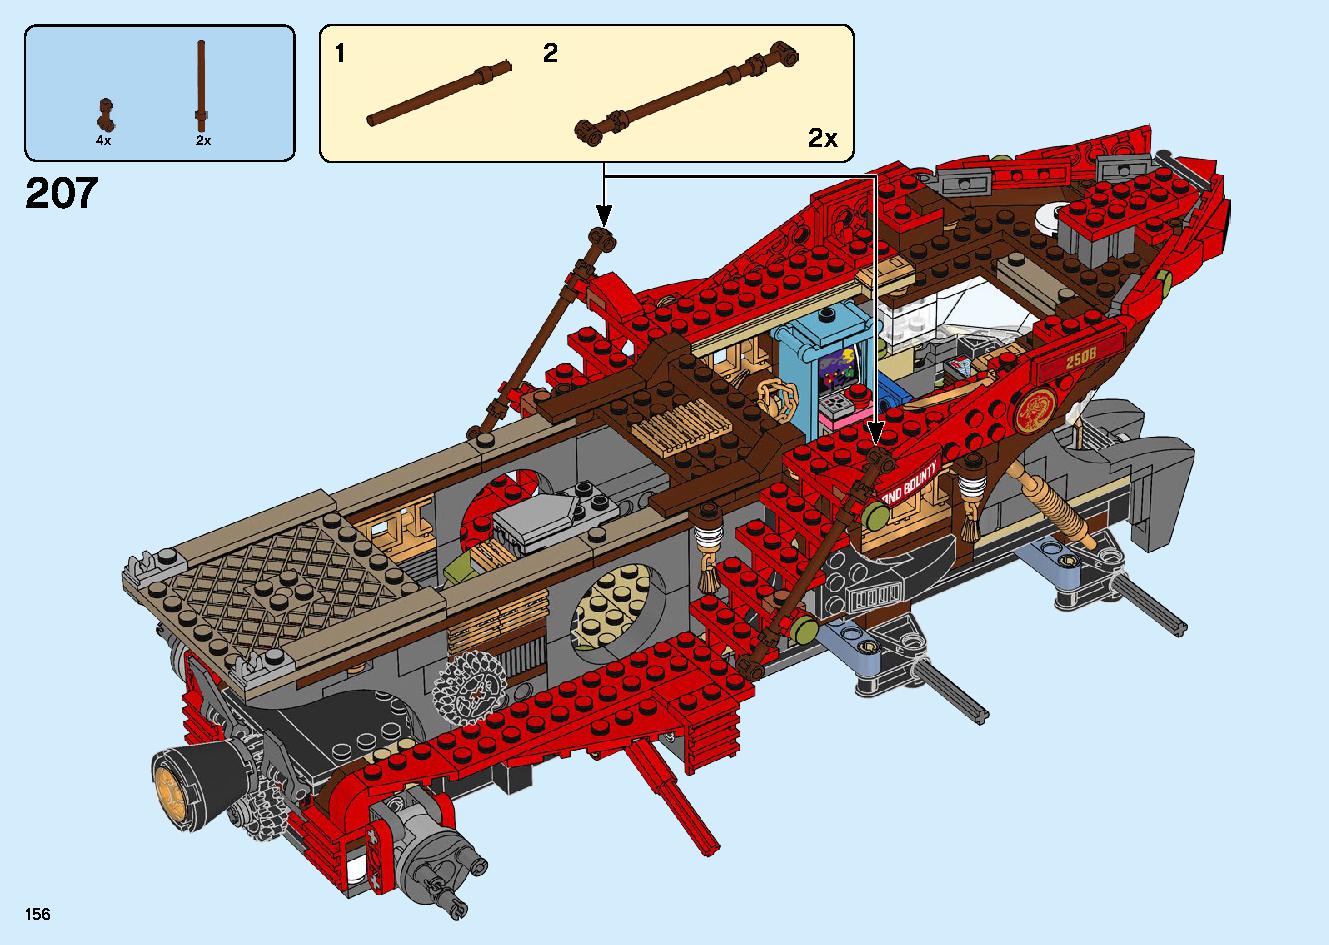 陸上戦艦バウンティ号 70677 レゴの商品情報 レゴの説明書・組立方法 156 page